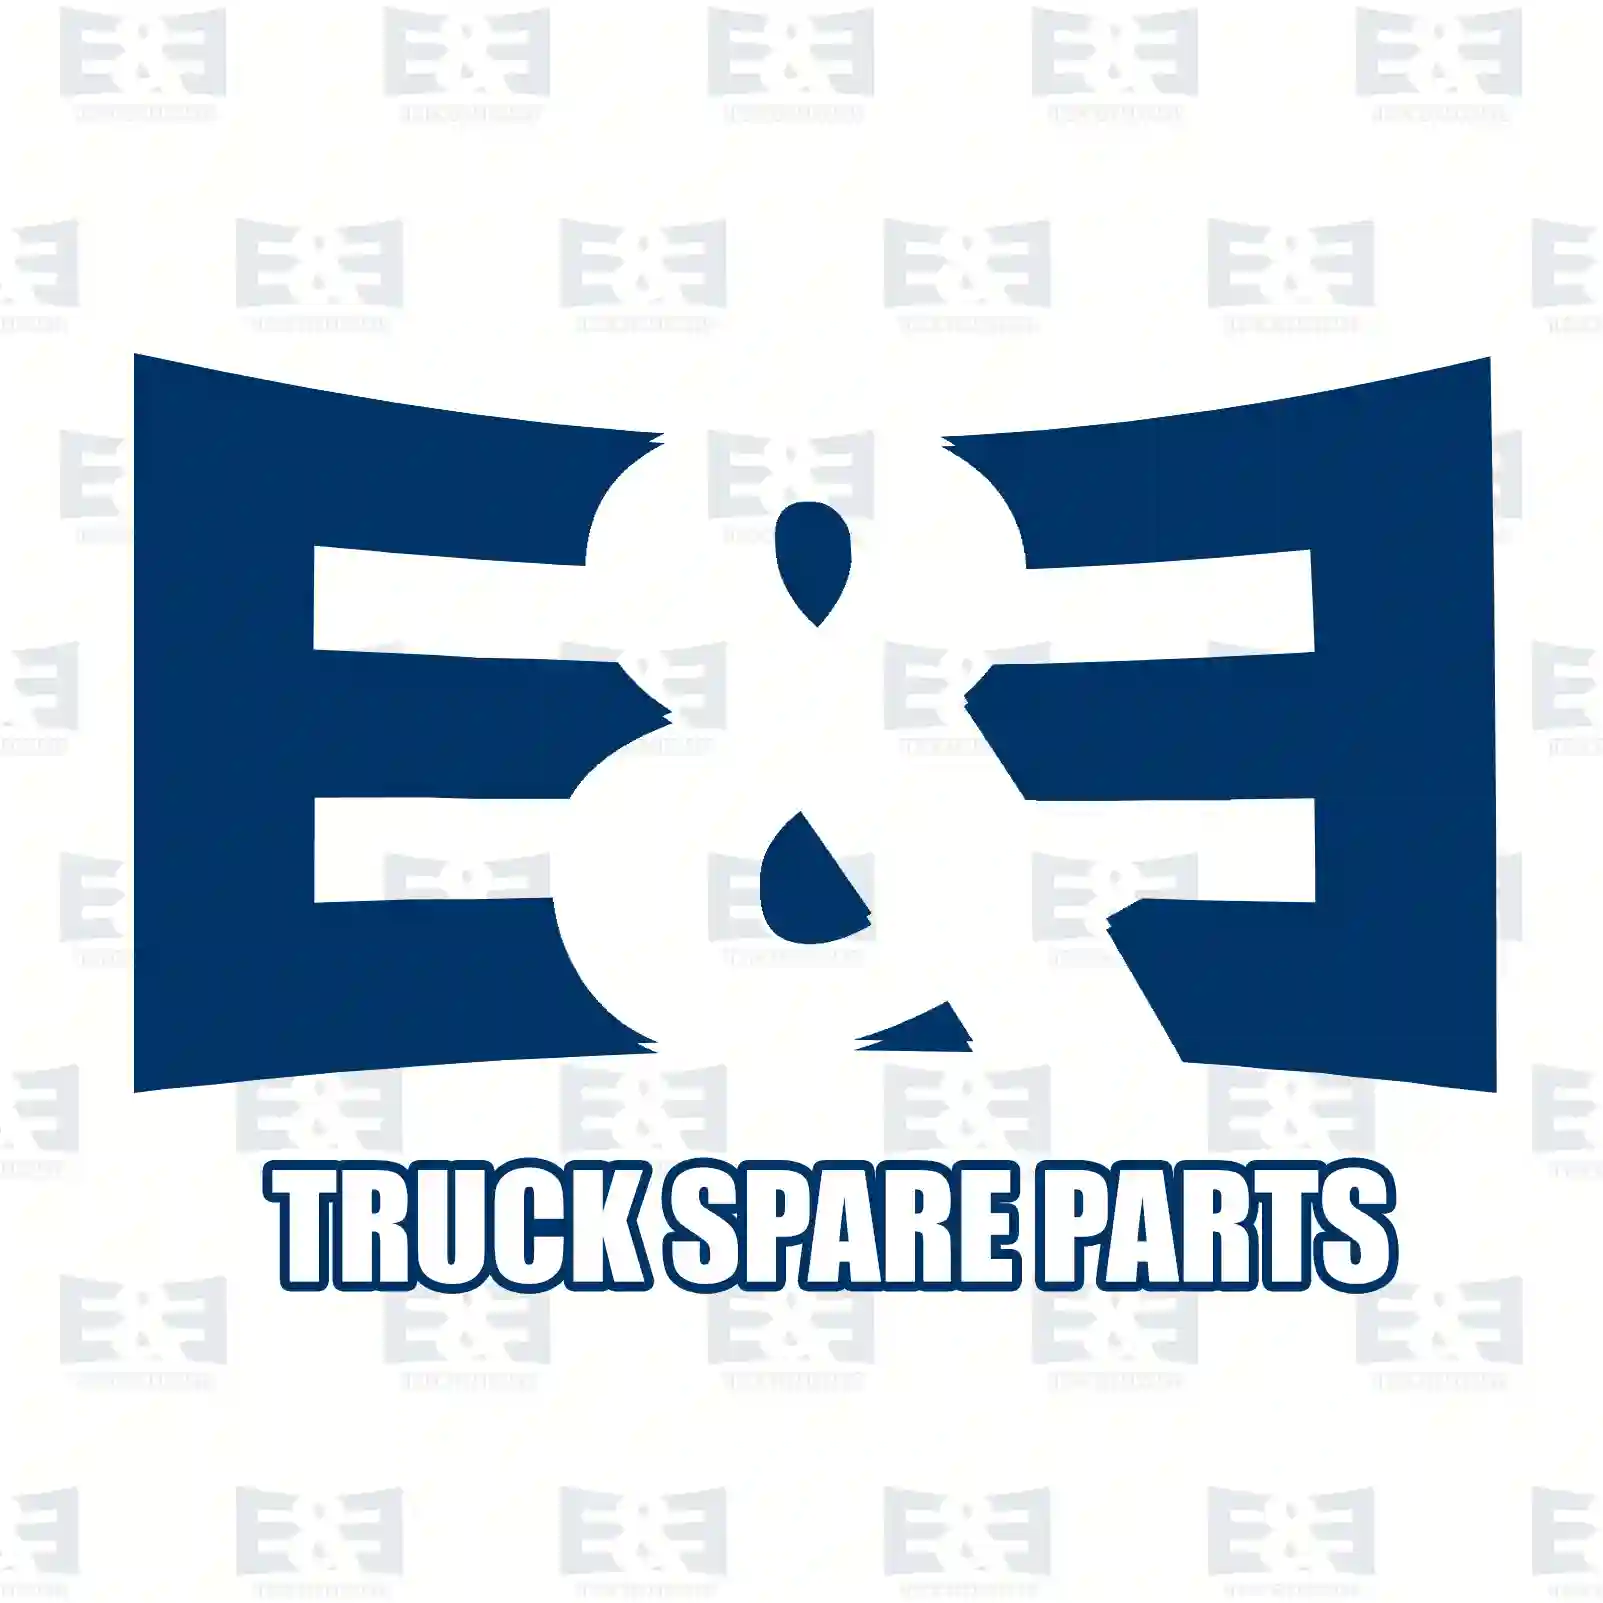 V-belt, 2E2285484, 500387663, ZG02362-0008, ||  2E2285484 E&E Truck Spare Parts | Truck Spare Parts, Auotomotive Spare Parts V-belt, 2E2285484, 500387663, ZG02362-0008, ||  2E2285484 E&E Truck Spare Parts | Truck Spare Parts, Auotomotive Spare Parts